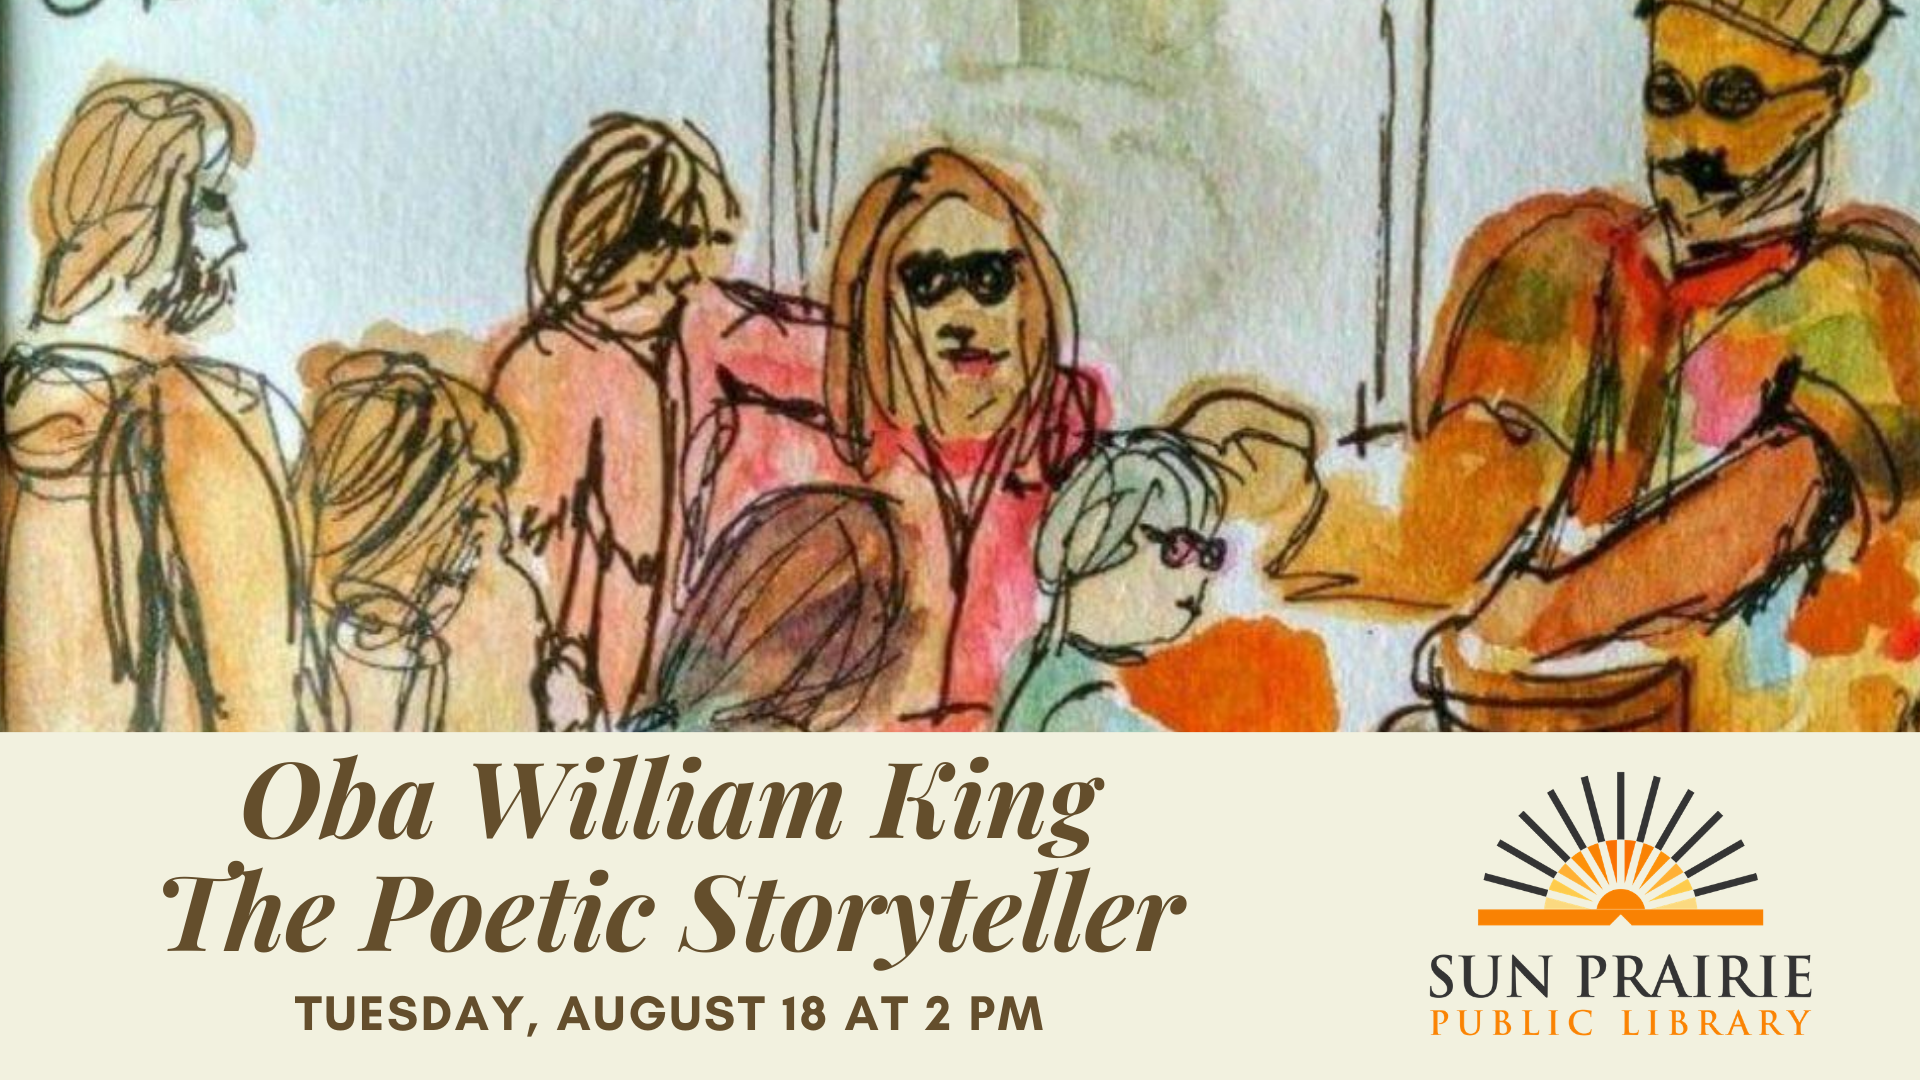 Oba William King, The Poetic Storyteller